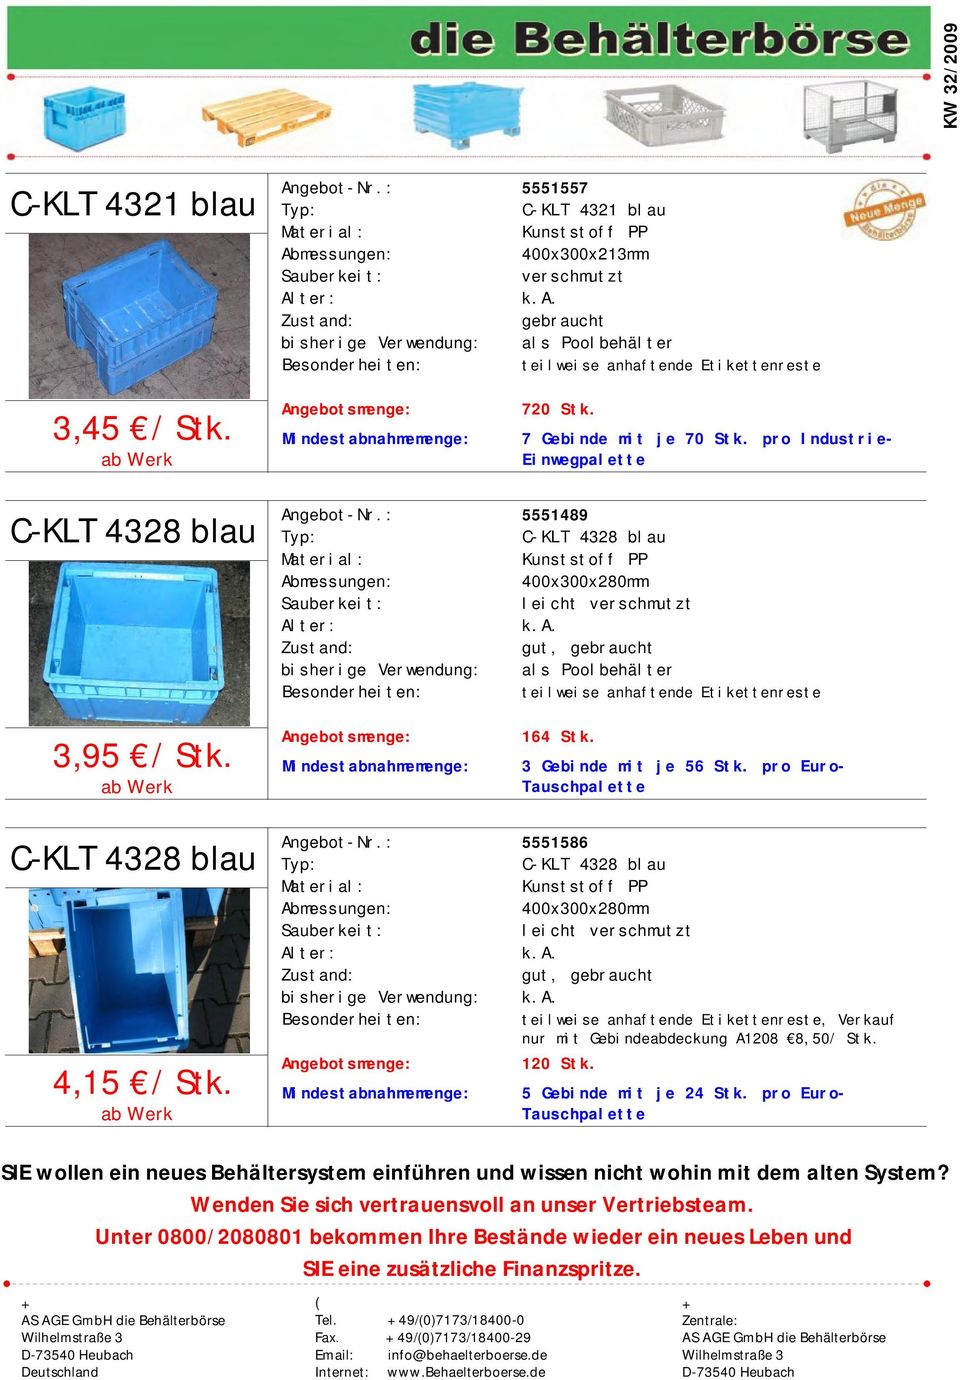 Mindestabnahmemenge: 5 Gebinde mit je 24 Stk. pro Euro- 5551586 C-KLT 4328 blau 400x300x280mm, Verkauf nur mit Gebindeabdeckung A1208 8,50/ Stk. 120 Stk.